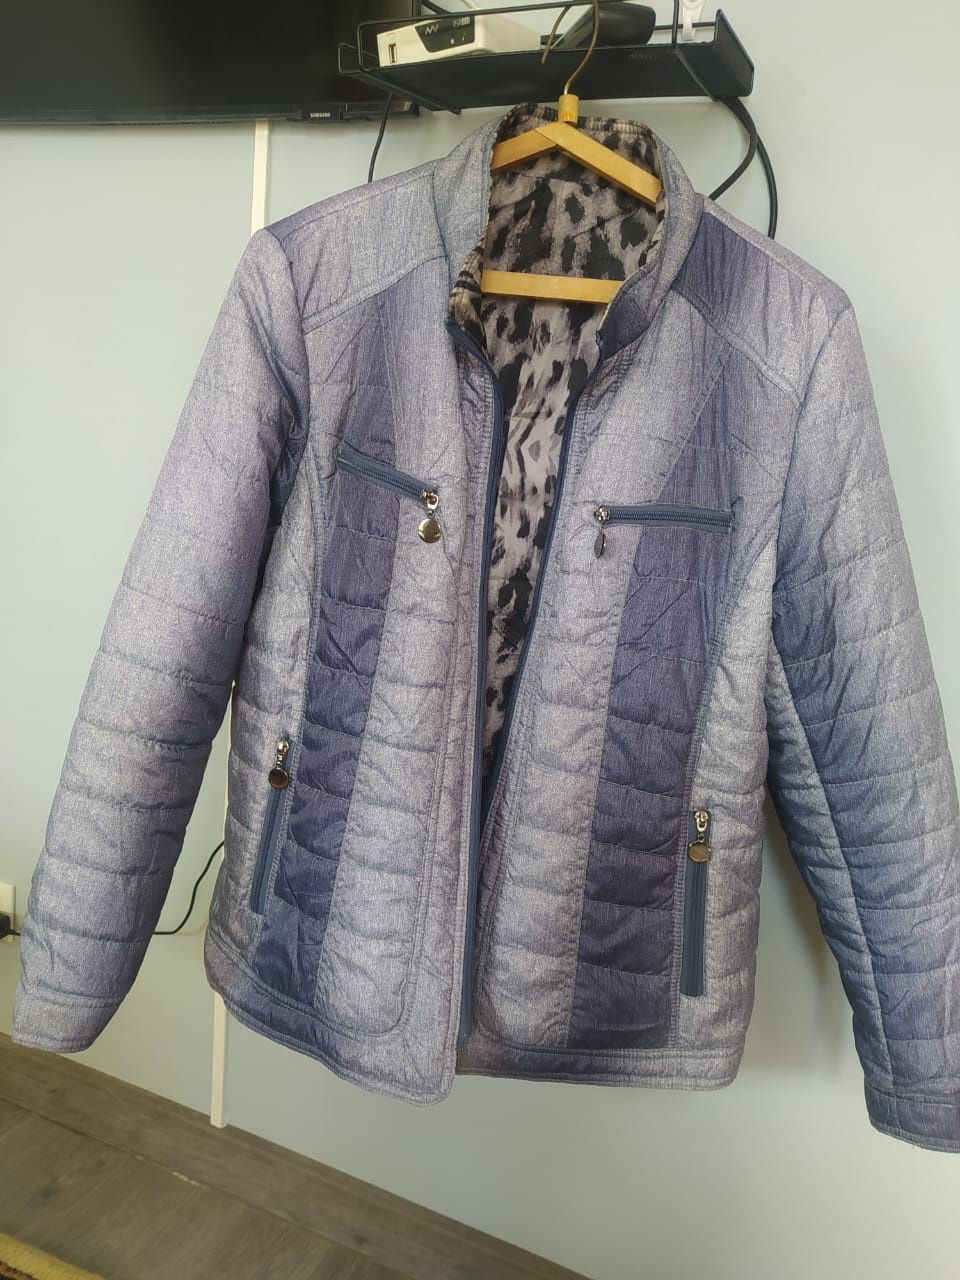 Продам куртки 52-54 размеры,одна удлиненная,новая,вторая двухсторонняя